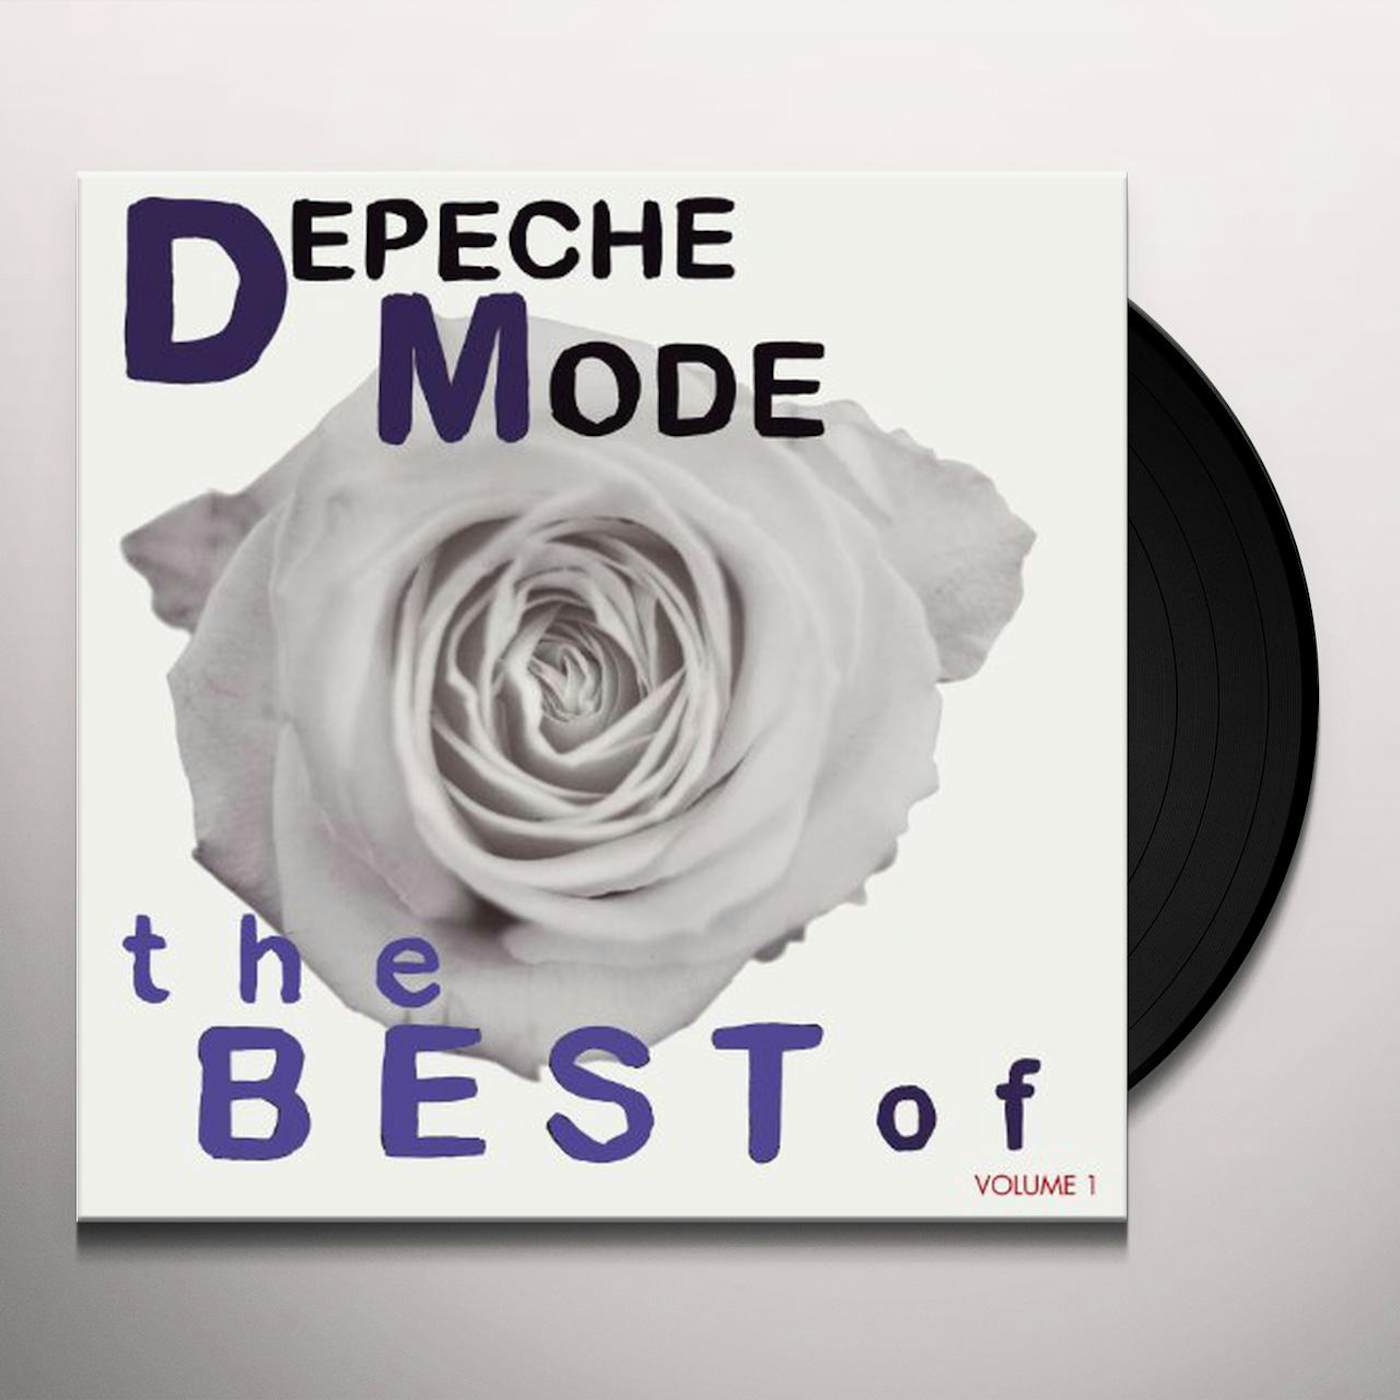 Depeche Mode – The Best Of (Volume 1) (2019, Vinyl) - Discogs